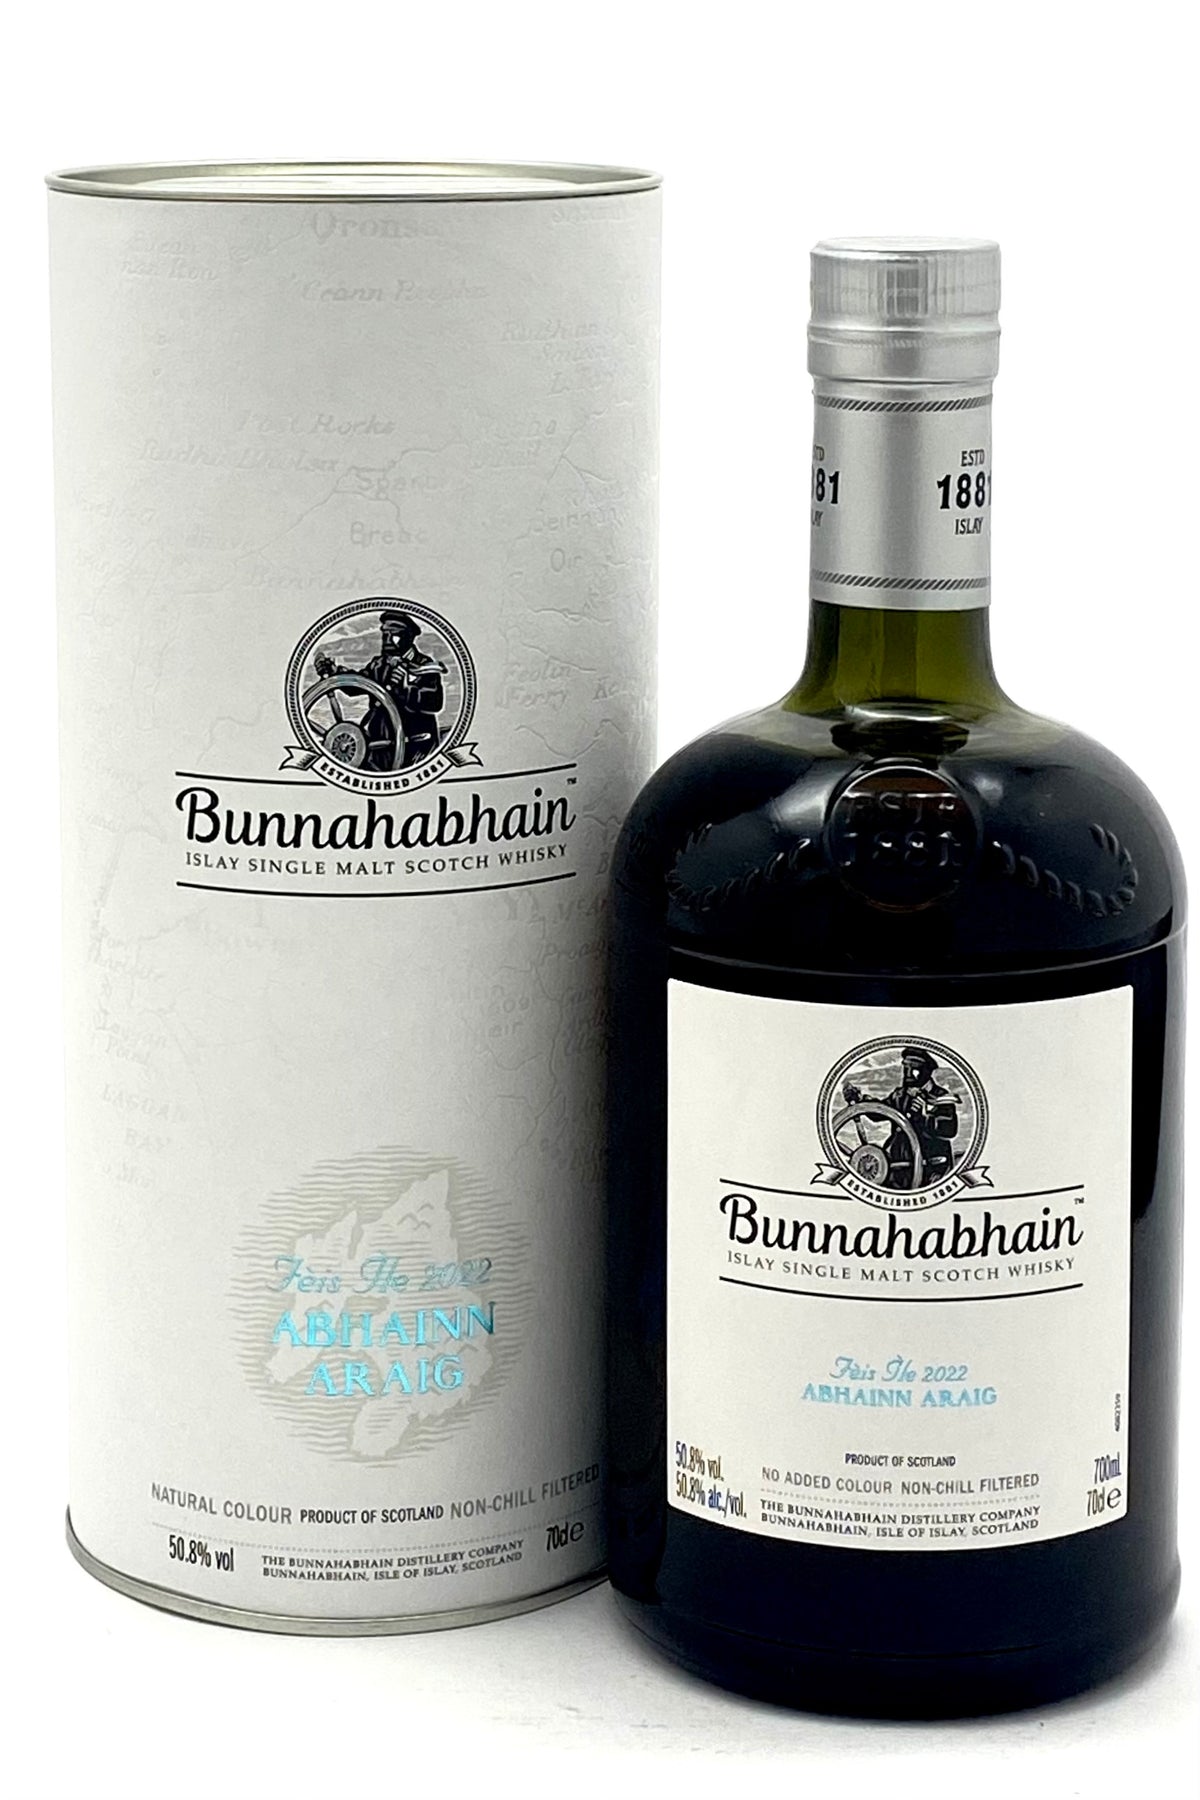 Bunnahabhain Fèis Ìle 2022: Abhainn Araig Single Malt Scotch Whiskey Limited Release